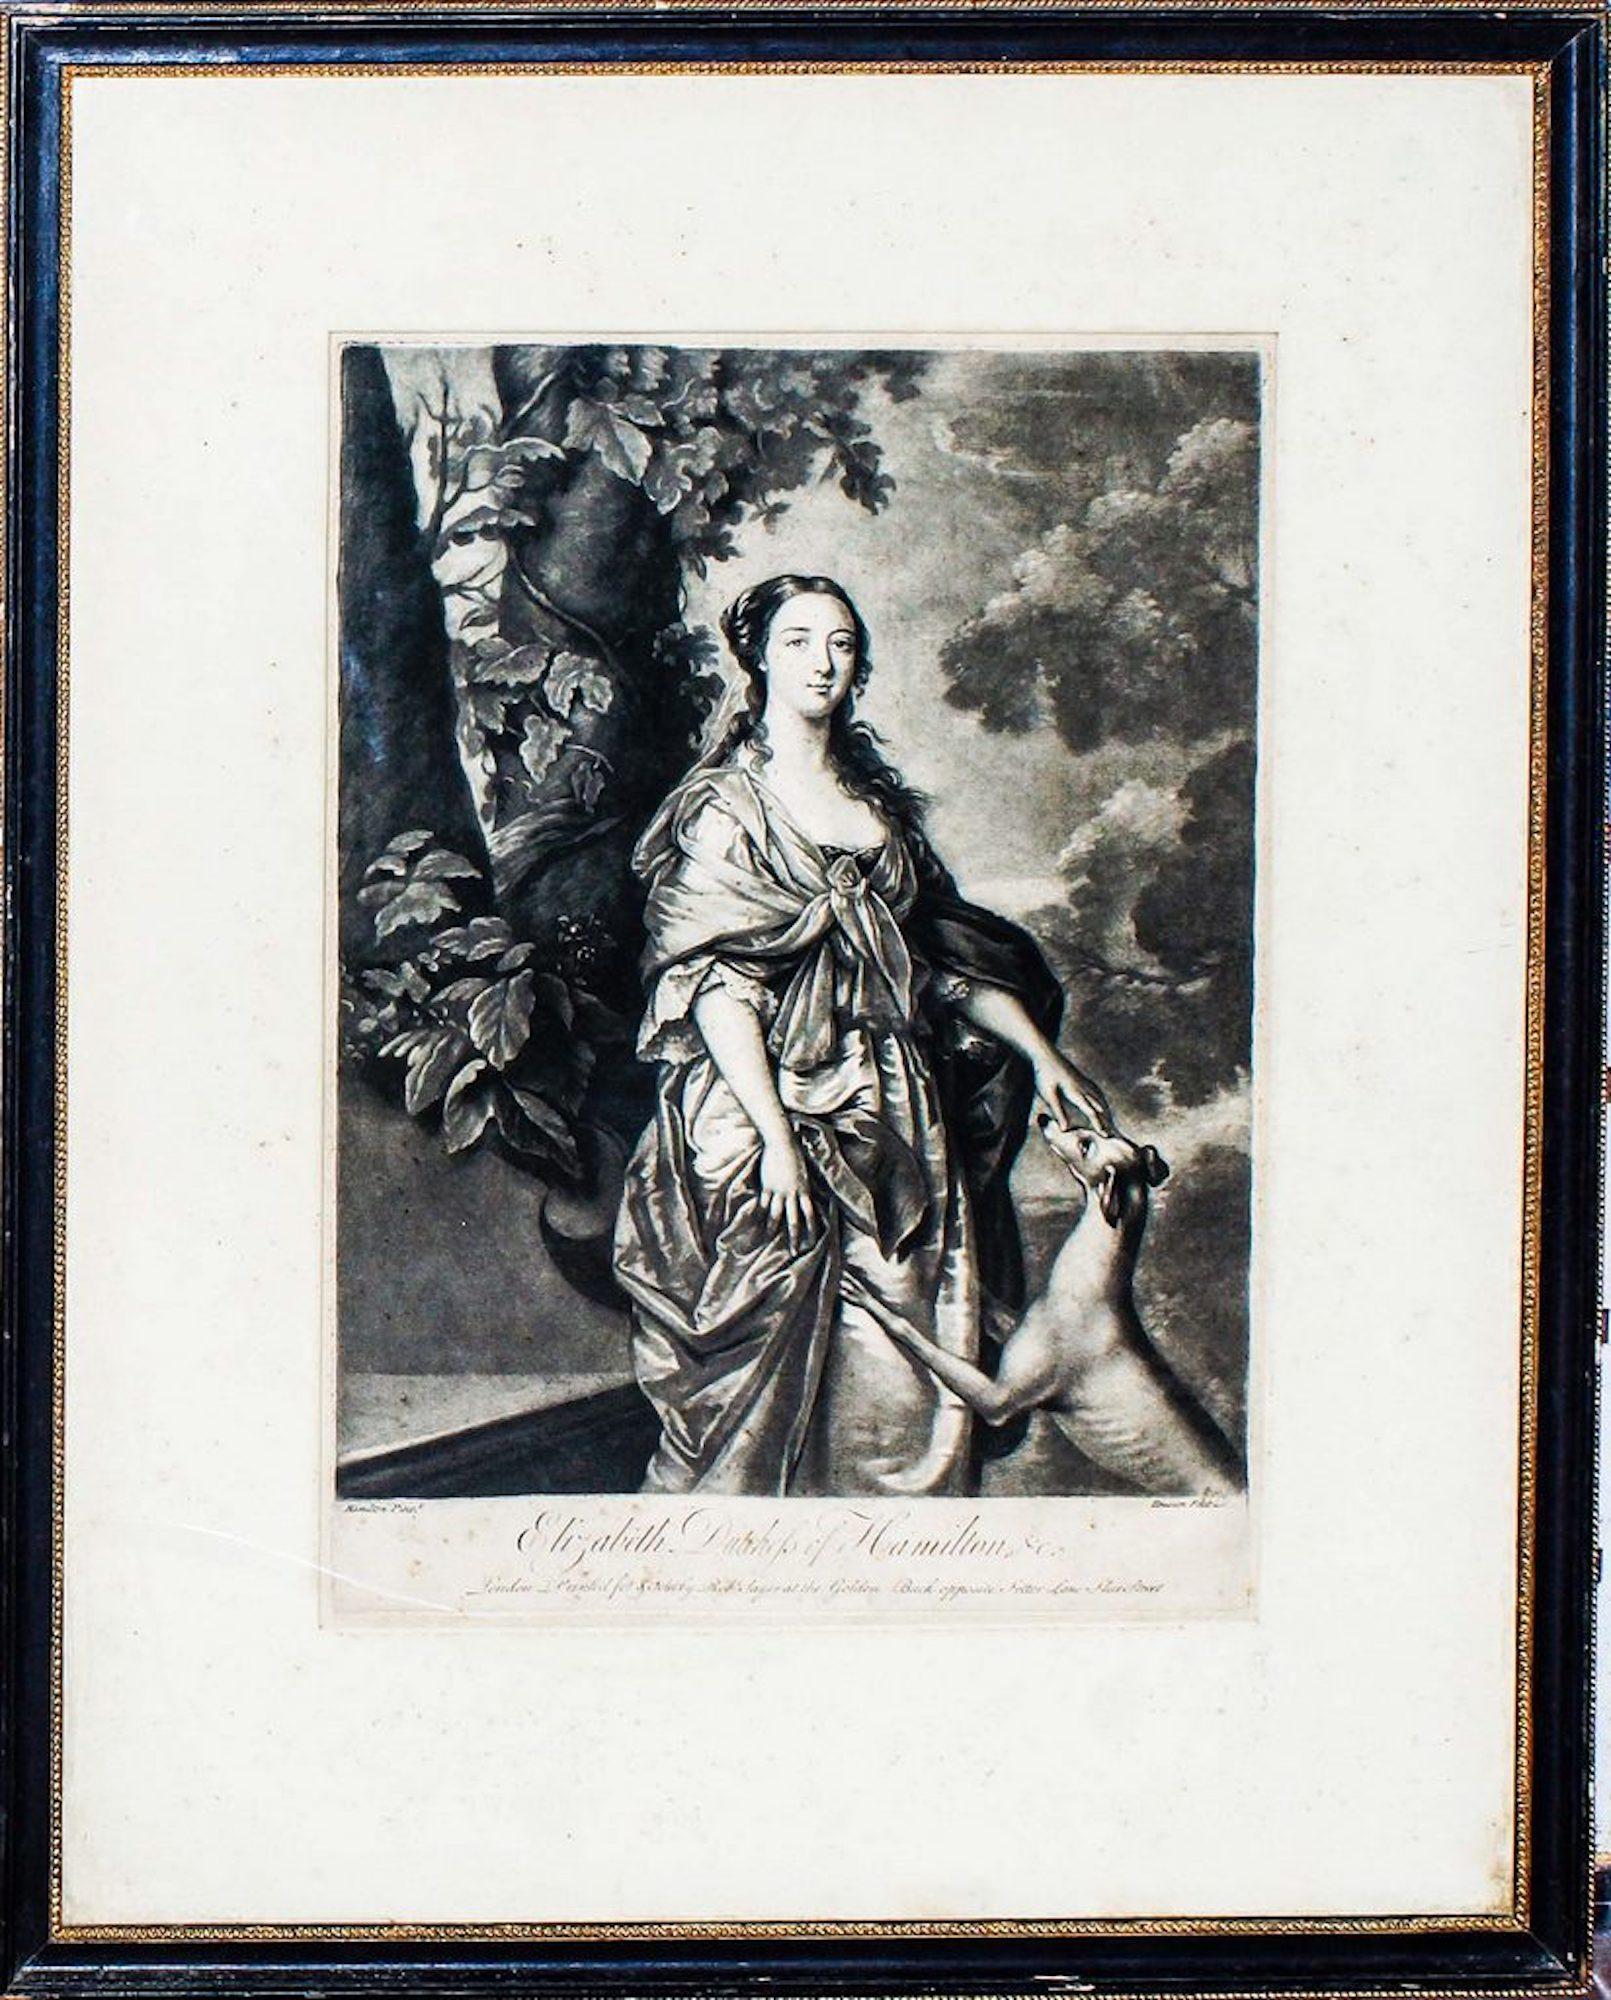 Sir William Hamilton Figurative Print - Elizabeth Duchess of Hamilton - Etching by W. Hamilton - Late 1700